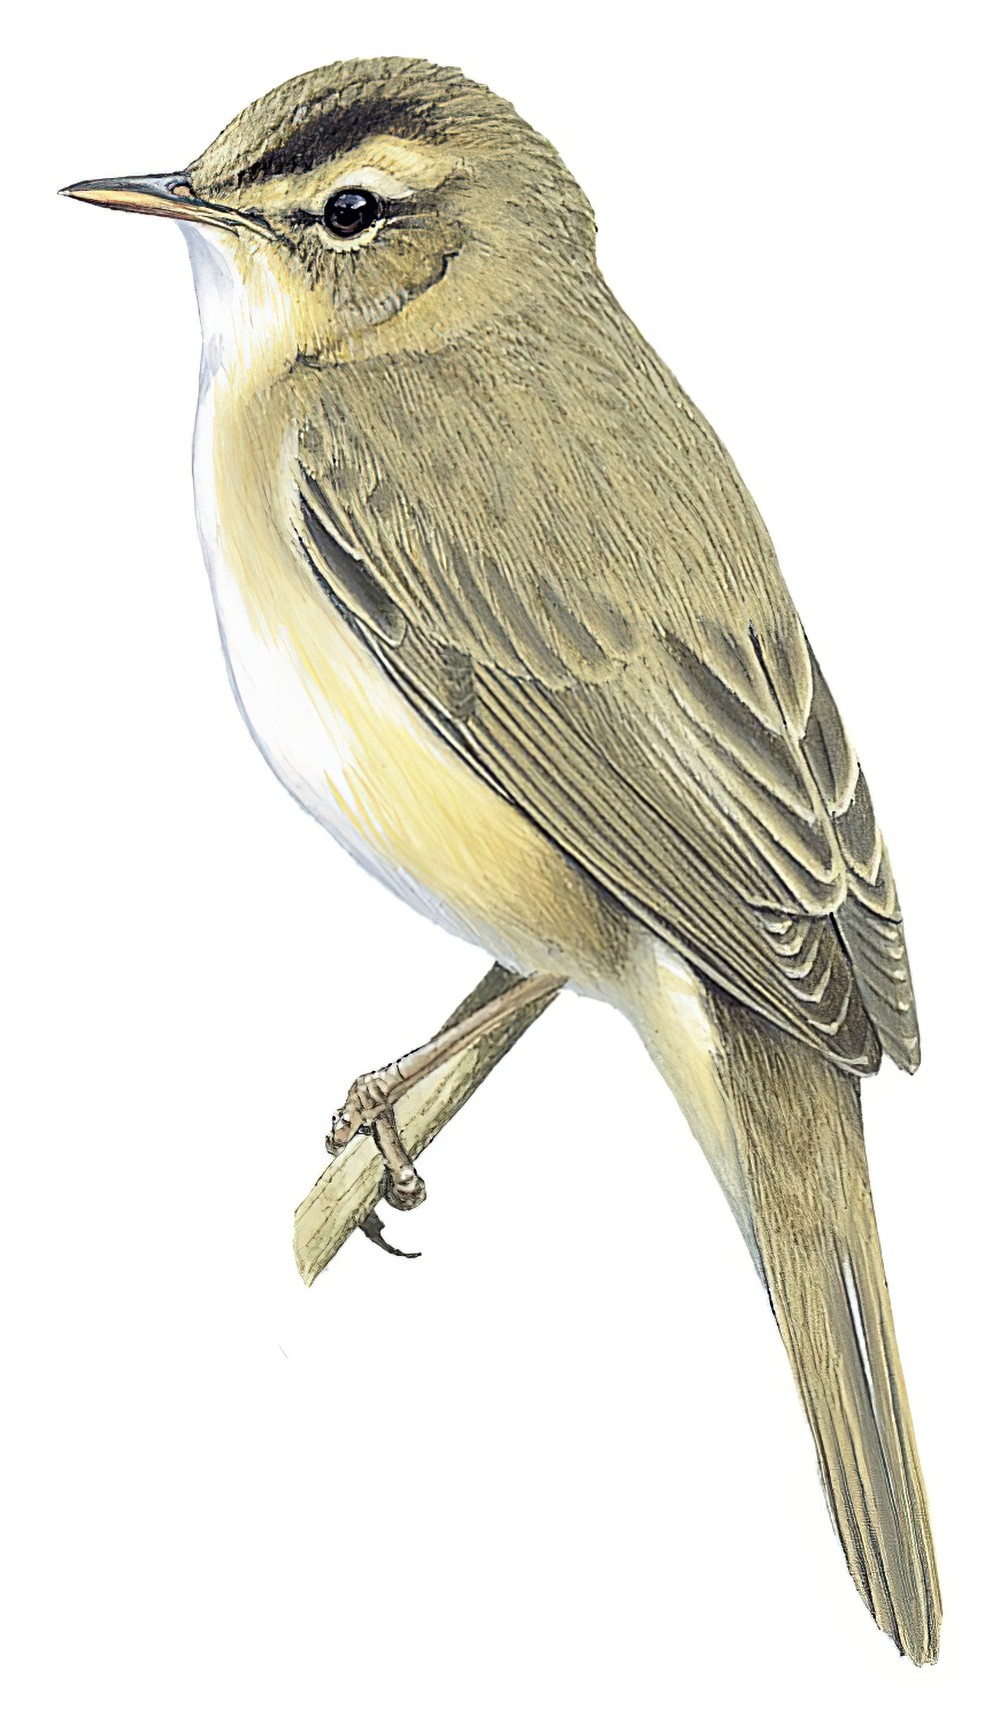 Black-browed Reed Warbler / Acrocephalus bistrigiceps